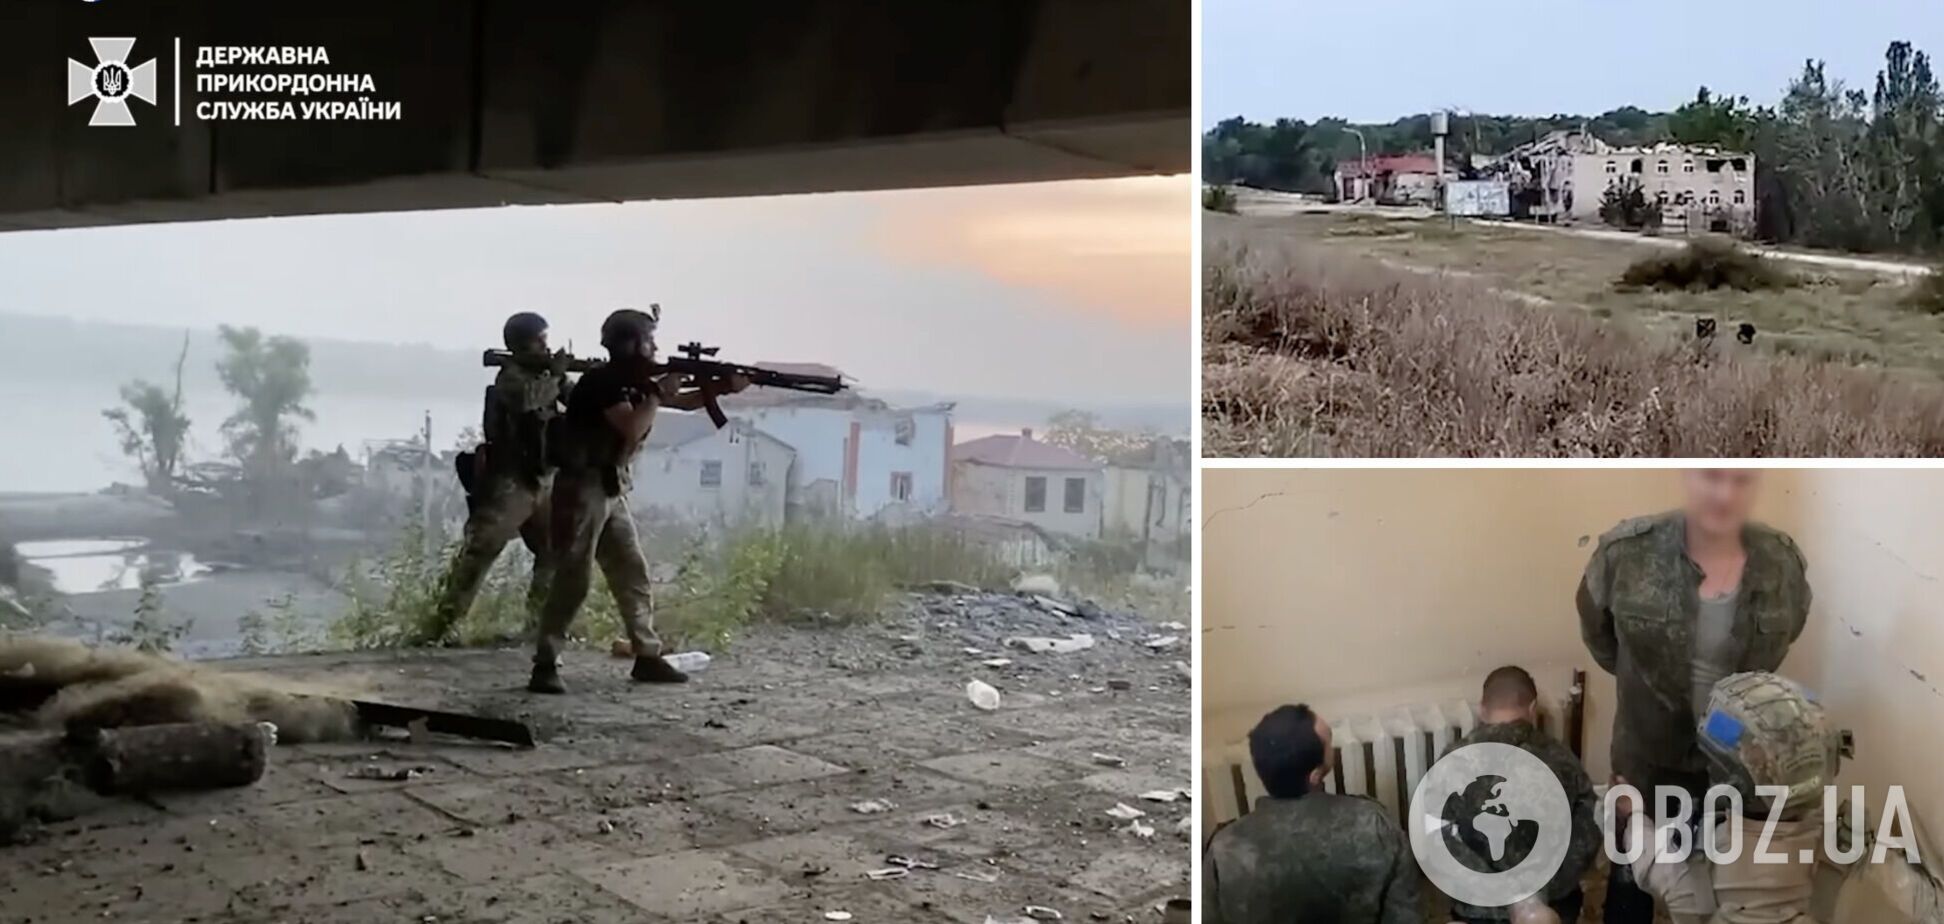 Значительную роль сыграли пограничники: в МВД показали кадры уникальной спецоперации на левом берегу Днепра. Видео